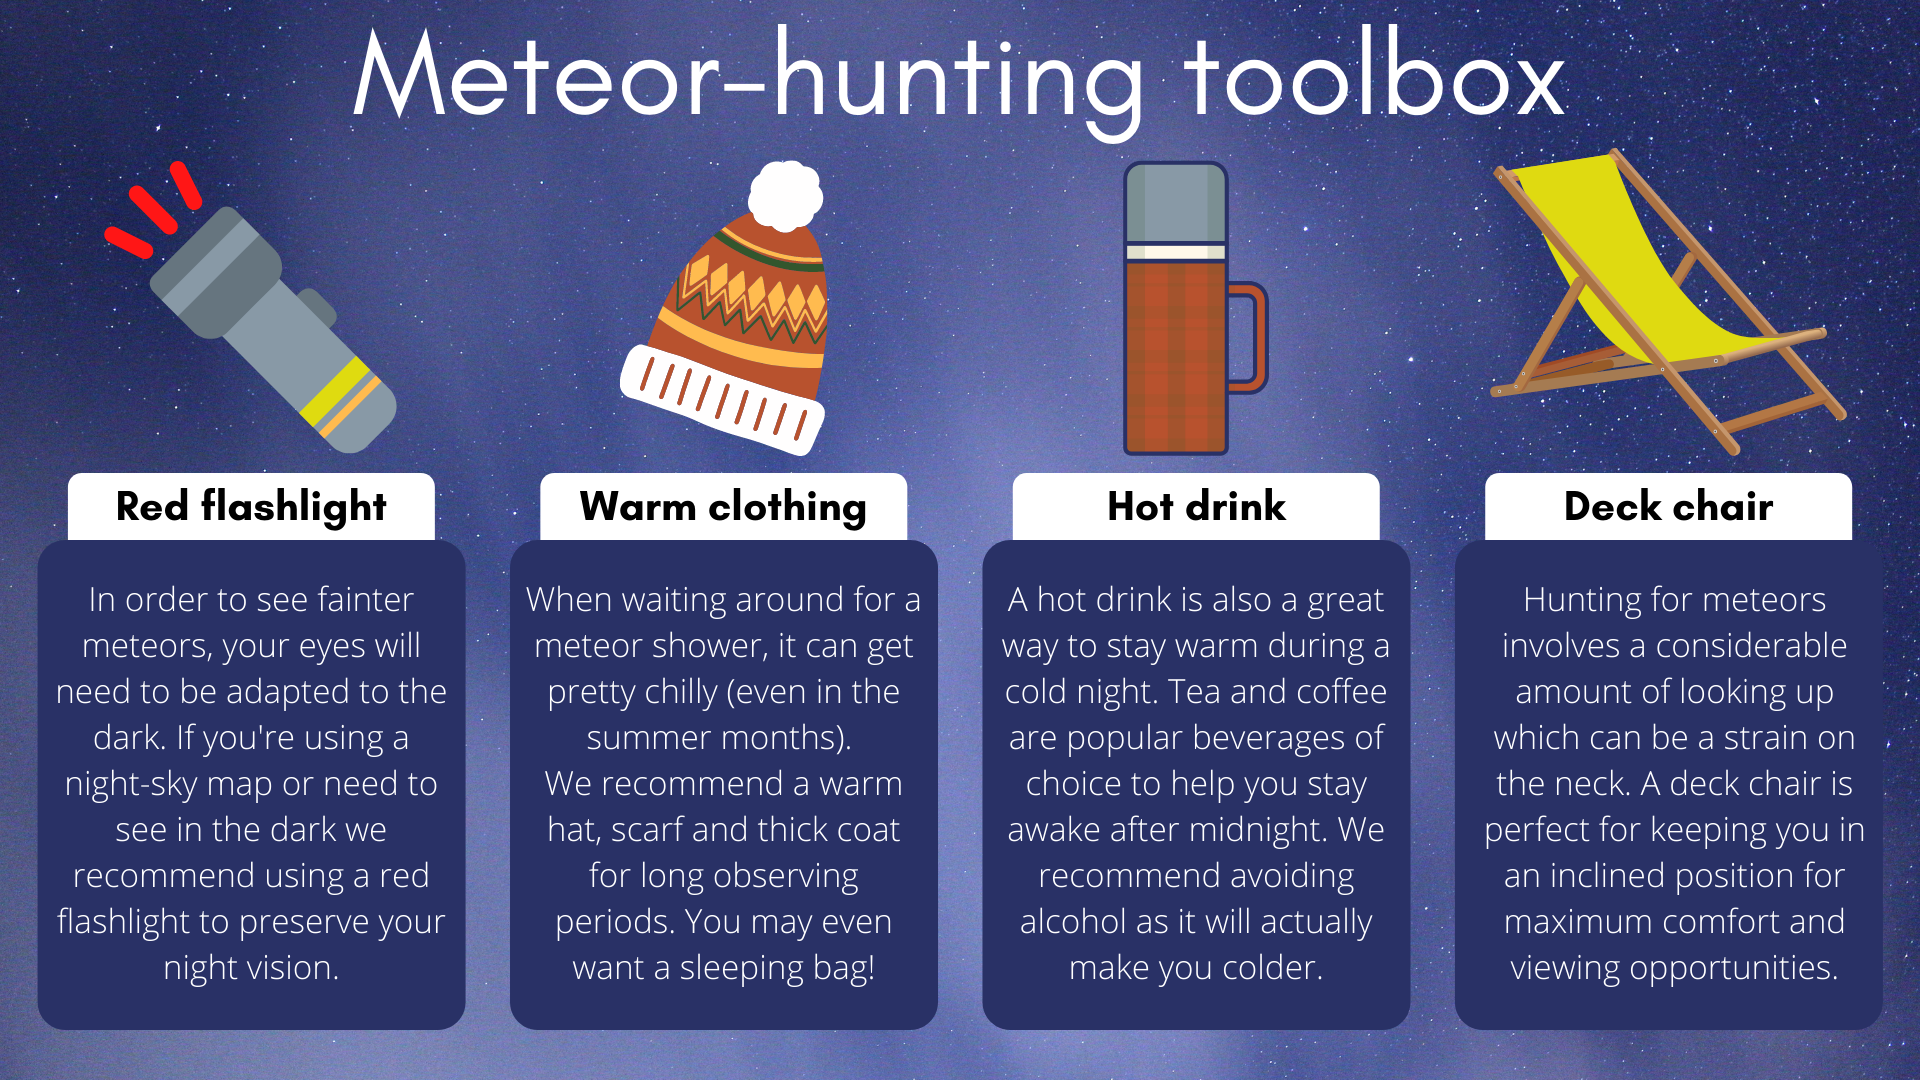 Para a experiência perfeita de caça aos meteoros, você precisará de uma lanterna de referência, roupas quentes, uma bebida quente e uma bela espreguiçadeira.